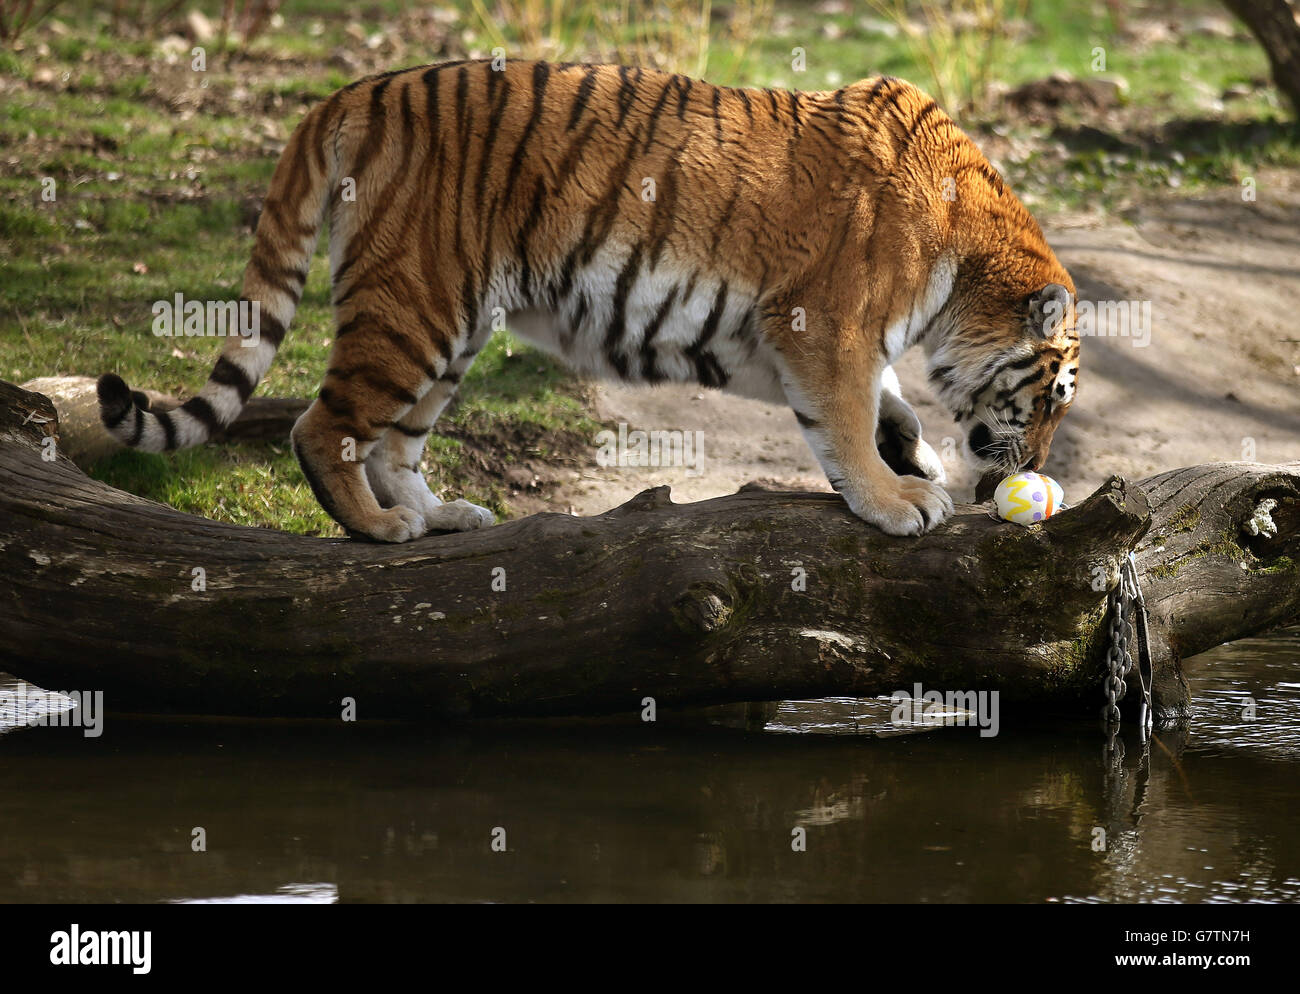 Il personale del Blair Drummond Safari Park regala agli Amur Tigers Bela (nella foto) e a Gengis una delizia di Pasqua, uova di struzzo piene delle loro prelibatezze di carne preferite. Hanno posizionato le uova in varie posizioni all'interno del recinto delle tigri. Foto Stock